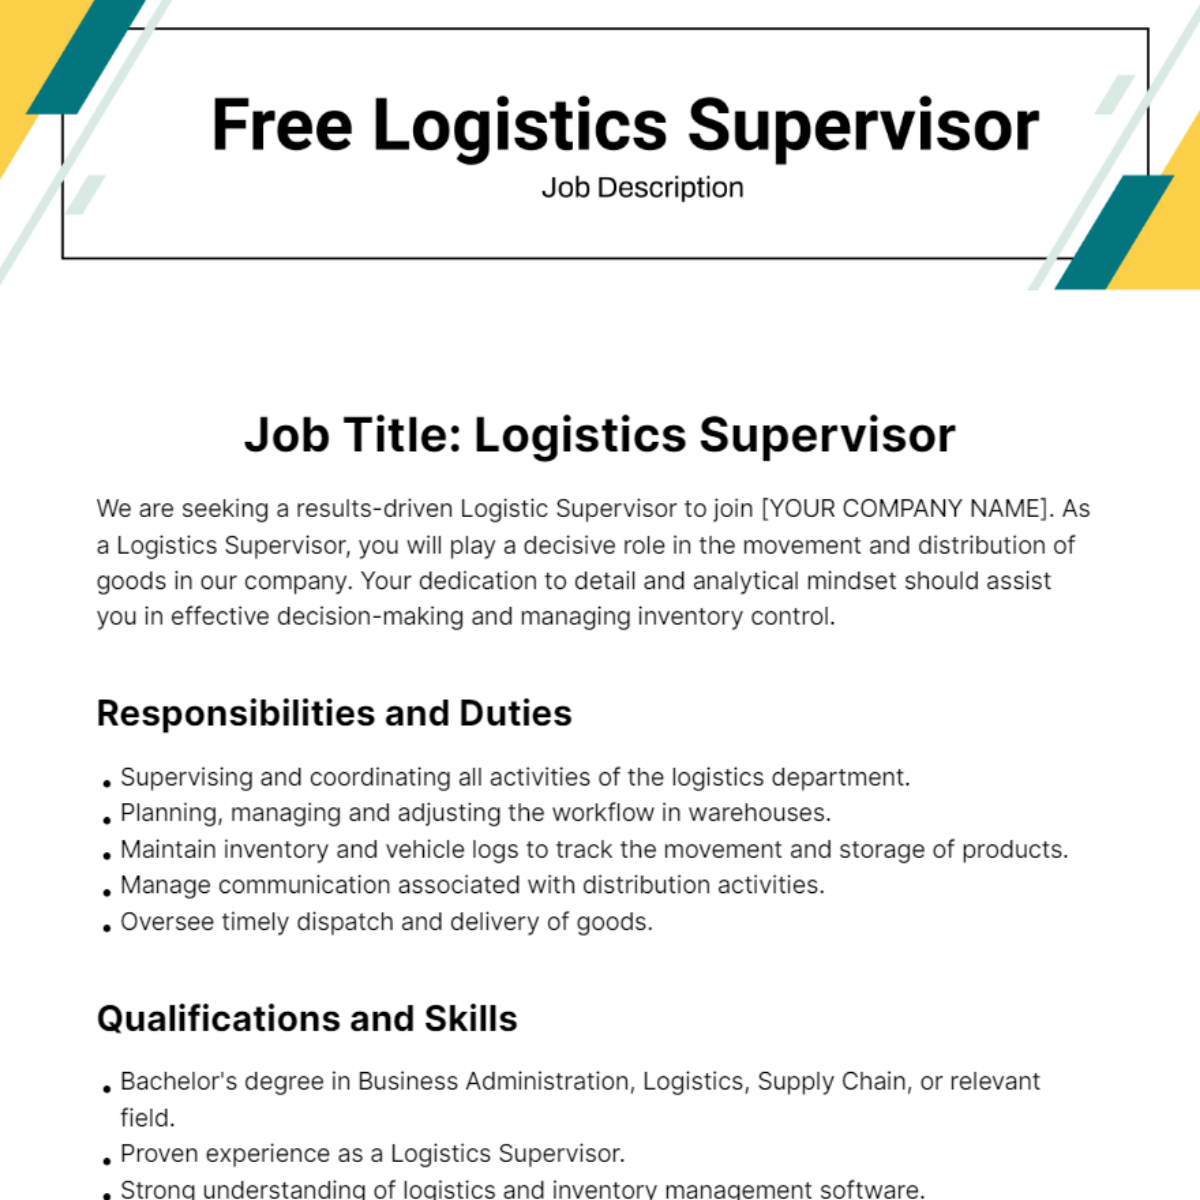 Free Logistics Supervisor Job Description Template